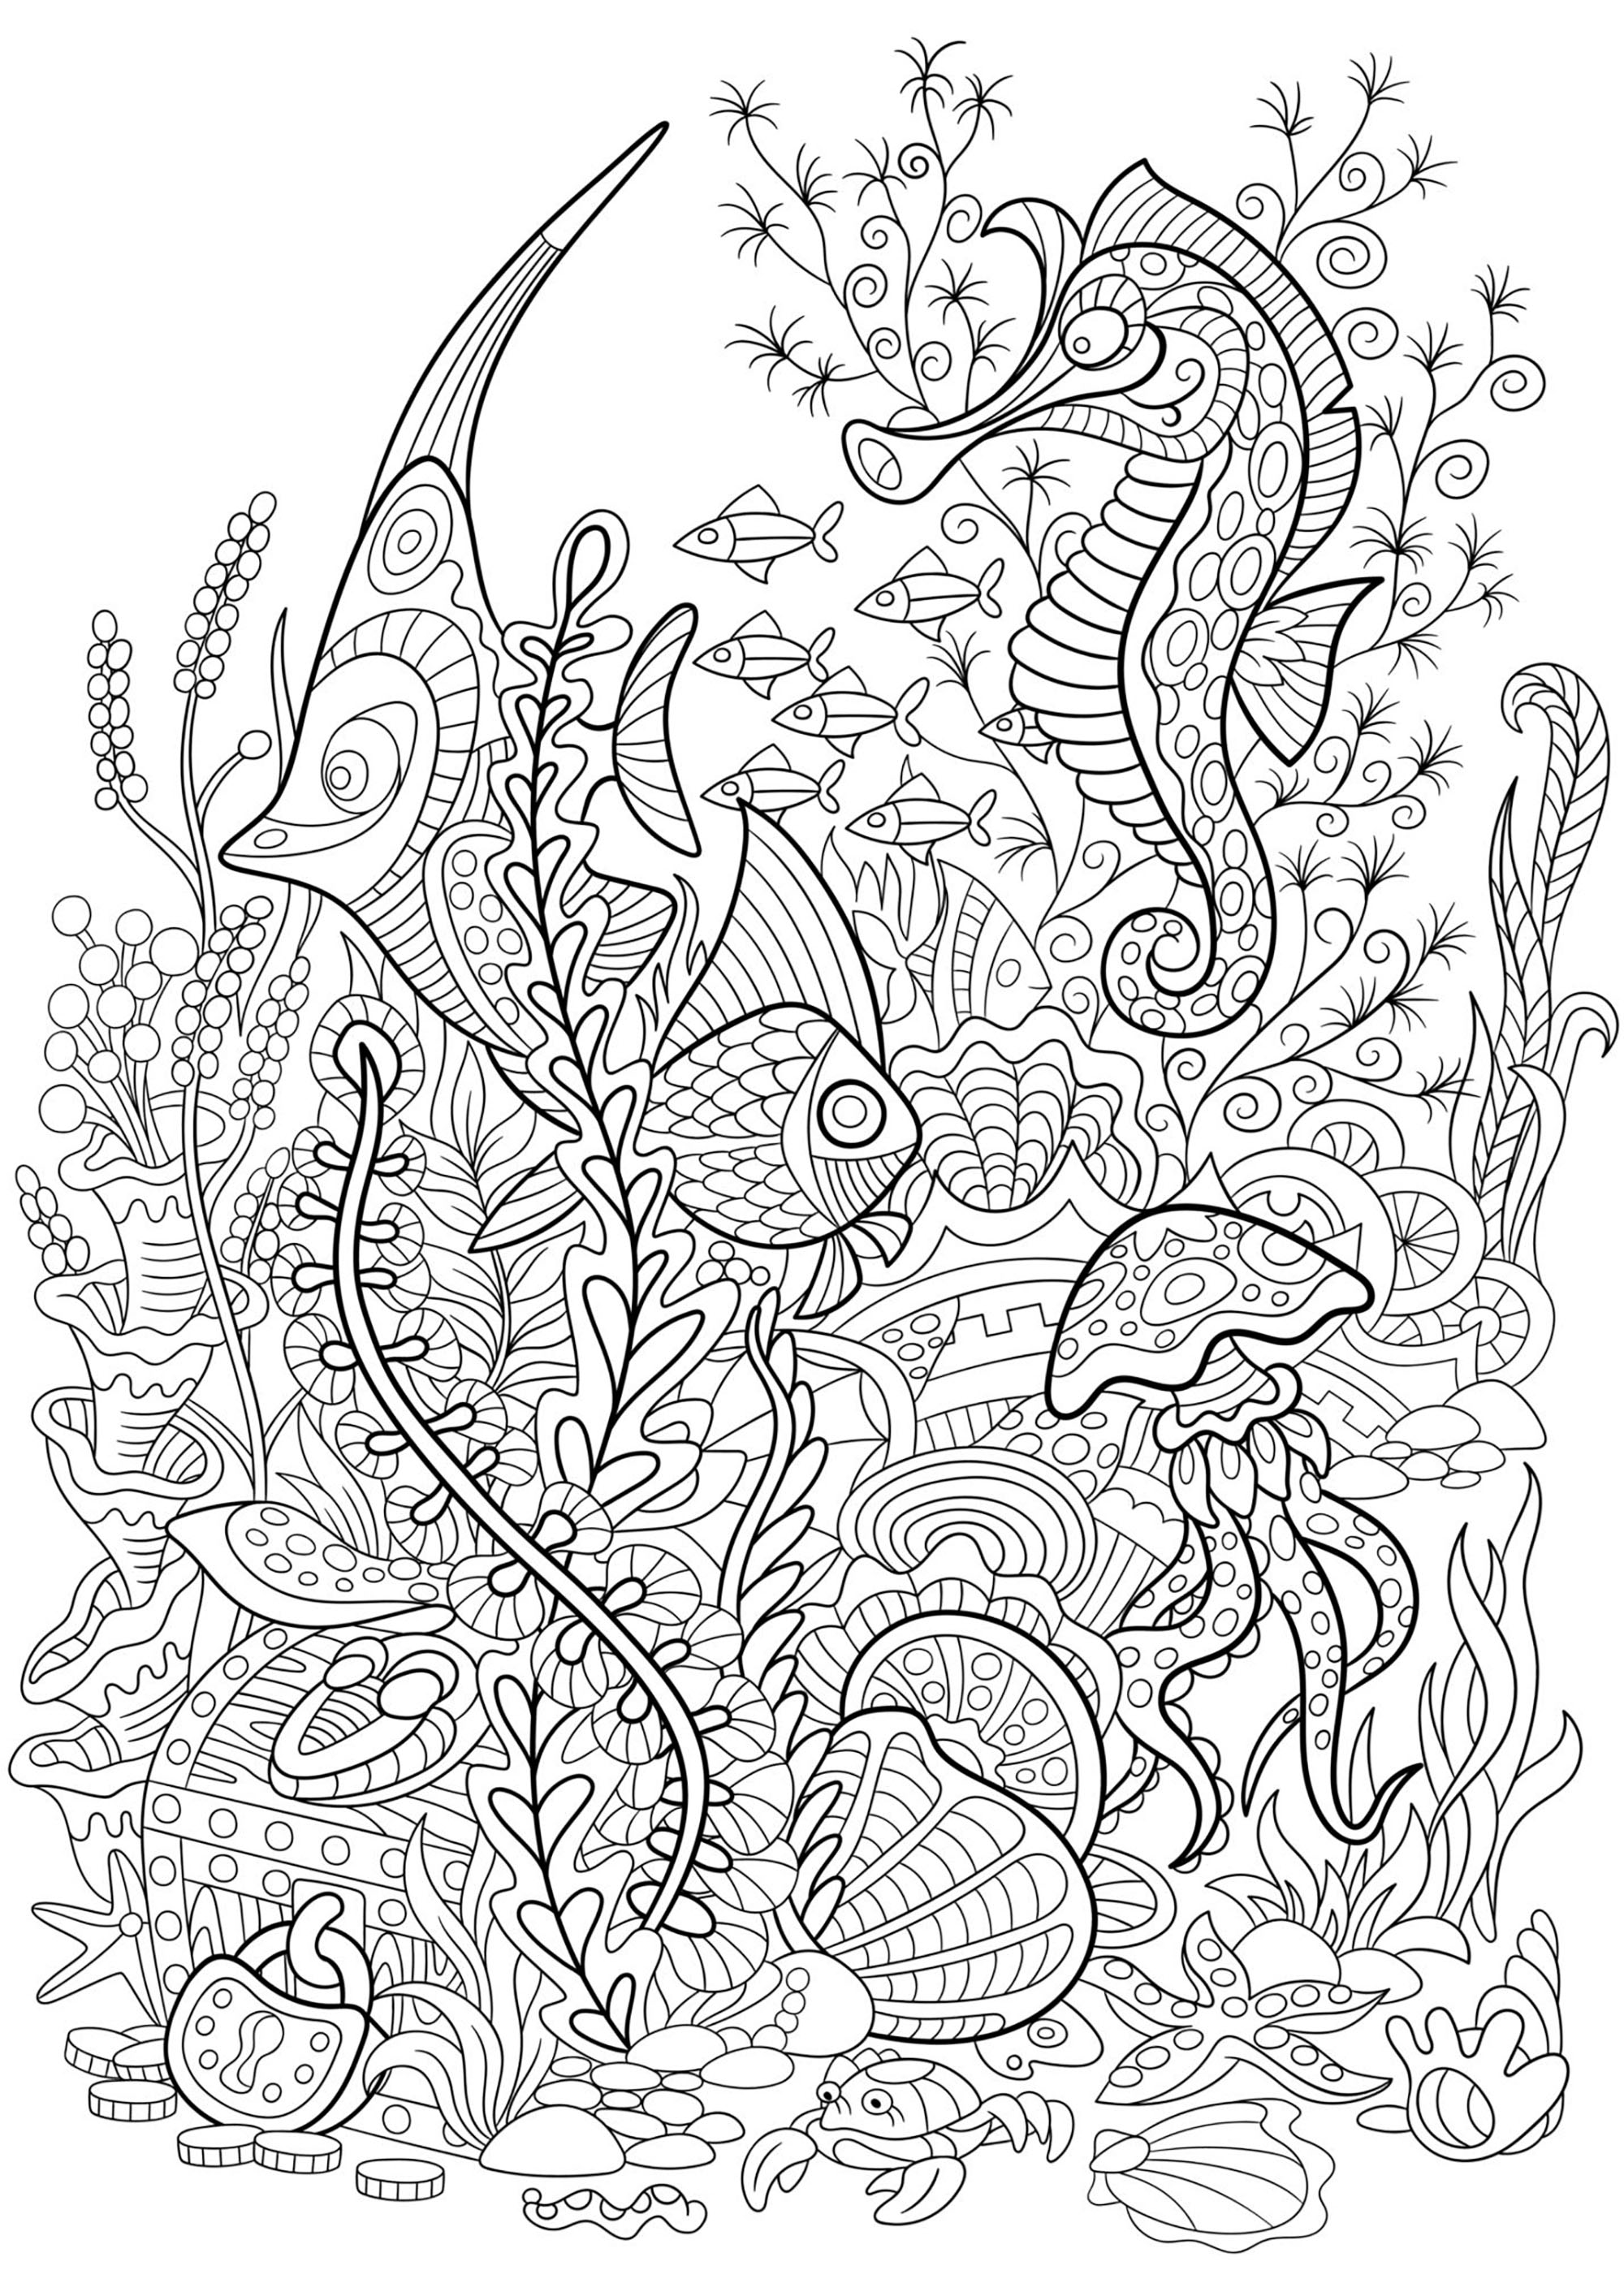 Seaworld com peixes, cavalos-marinhos, medusas e plantas aquáticas, Artista : Sybirko